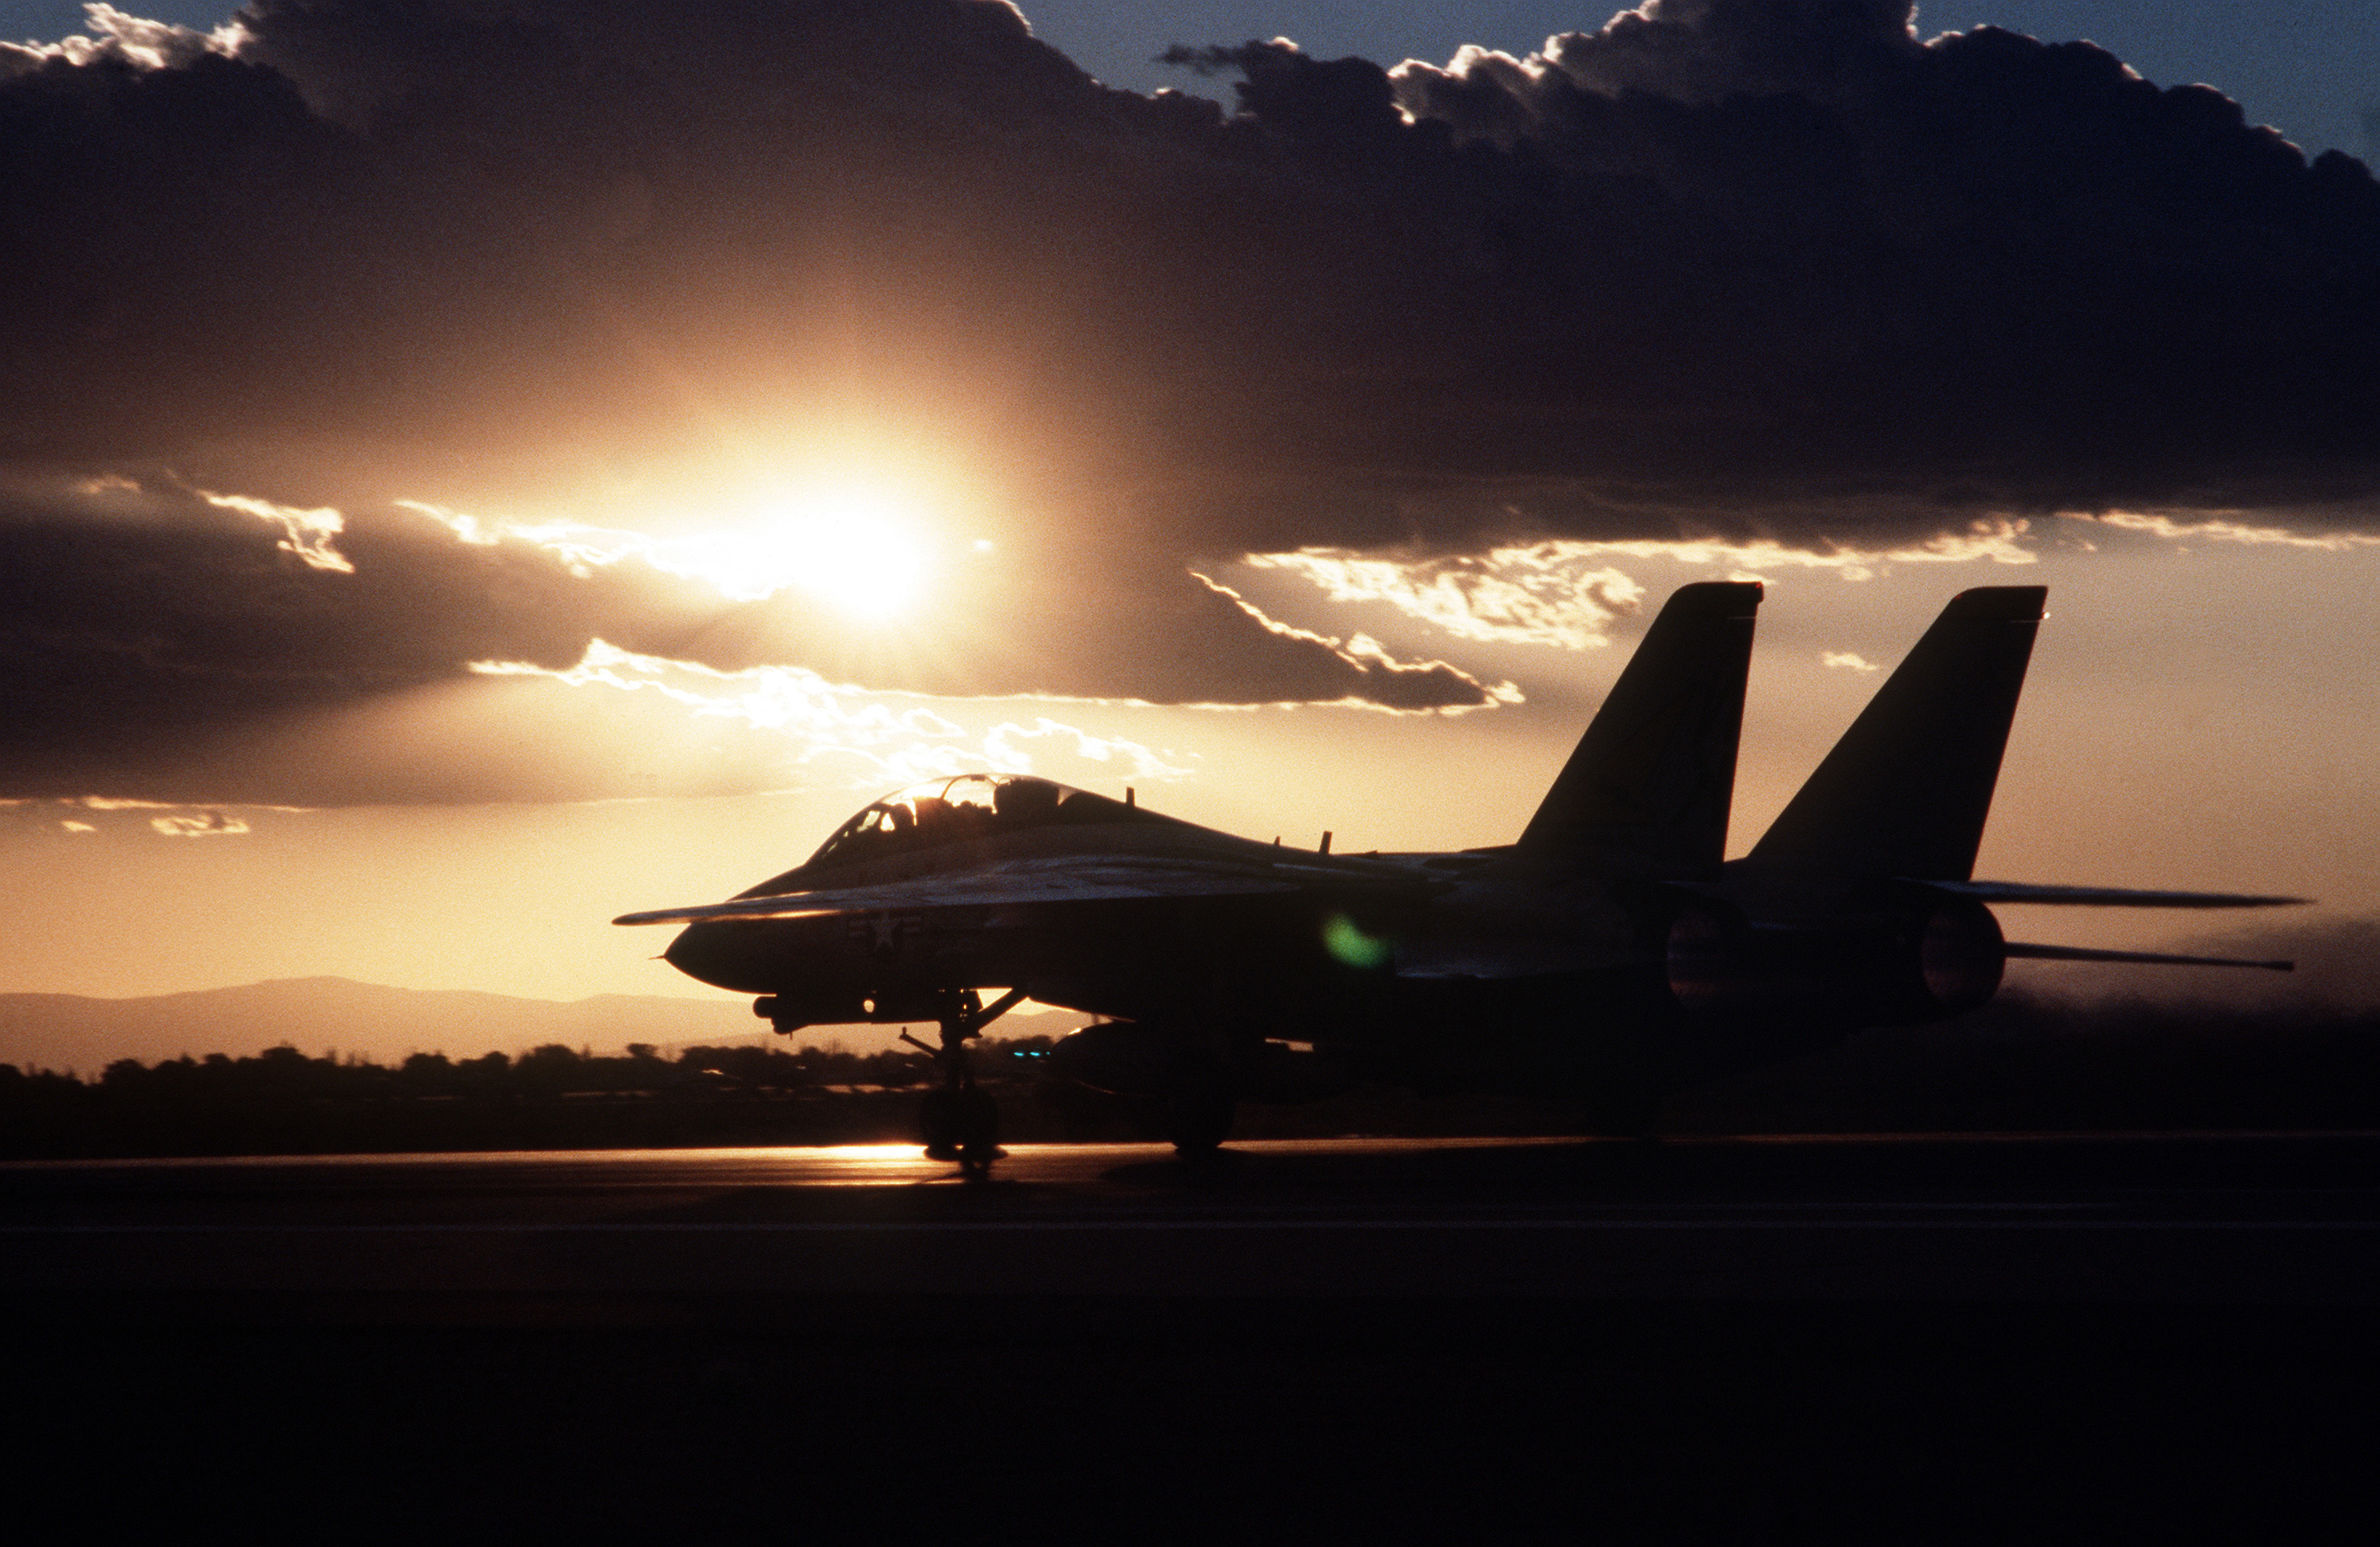 フリー画像 航空機 飛行機 軍用機 戦闘機 F 14トムキャット F 14tomcat 夕日 夕焼け 夕暮れ フリー素材 画像素材なら 無料 フリー写真素材のフリーフォト